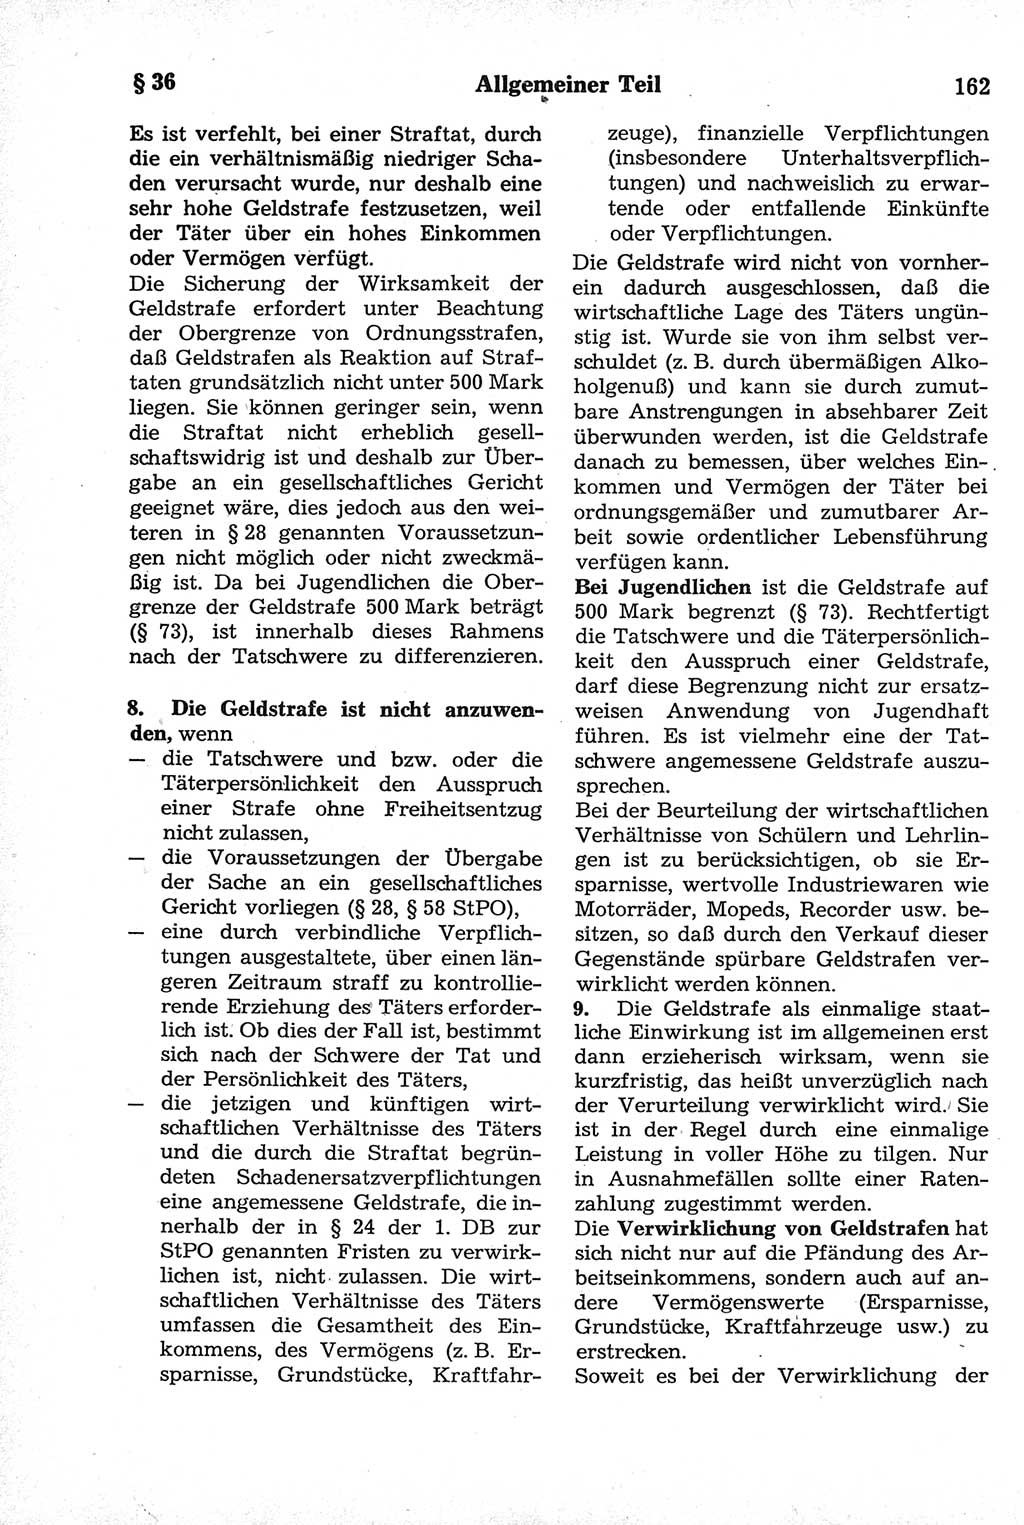 Strafrecht der Deutschen Demokratischen Republik (DDR), Kommentar zum Strafgesetzbuch (StGB) 1981, Seite 162 (Strafr. DDR Komm. StGB 1981, S. 162)